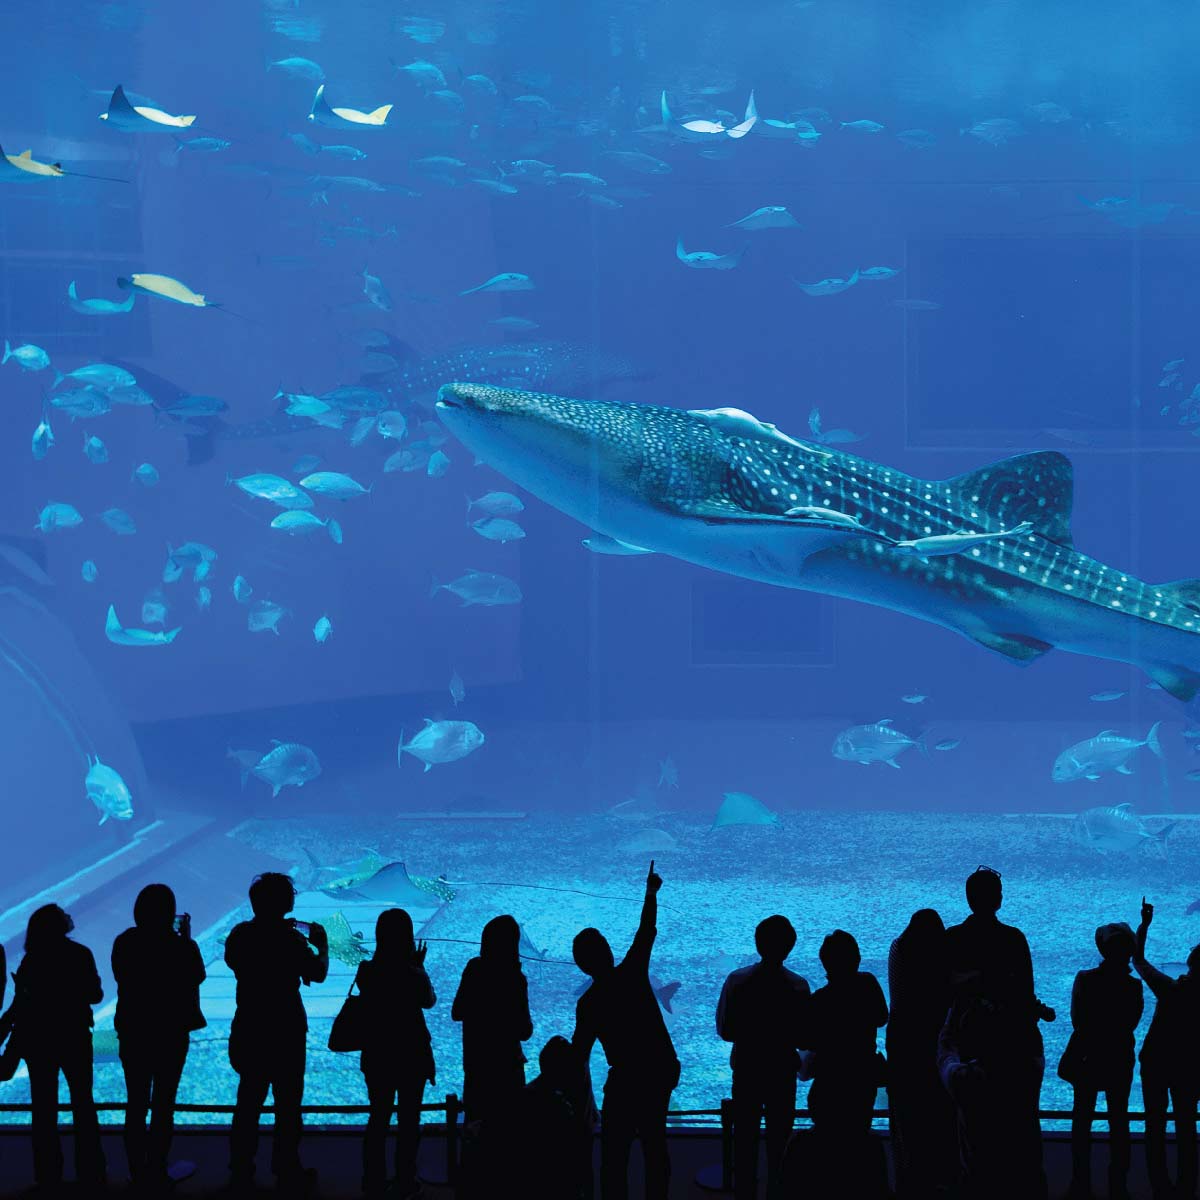 สถานที่ท่องเที่ยวประเทศญี่ปุ่น Okinawa Churaumi Aquarium โอกินาว่า